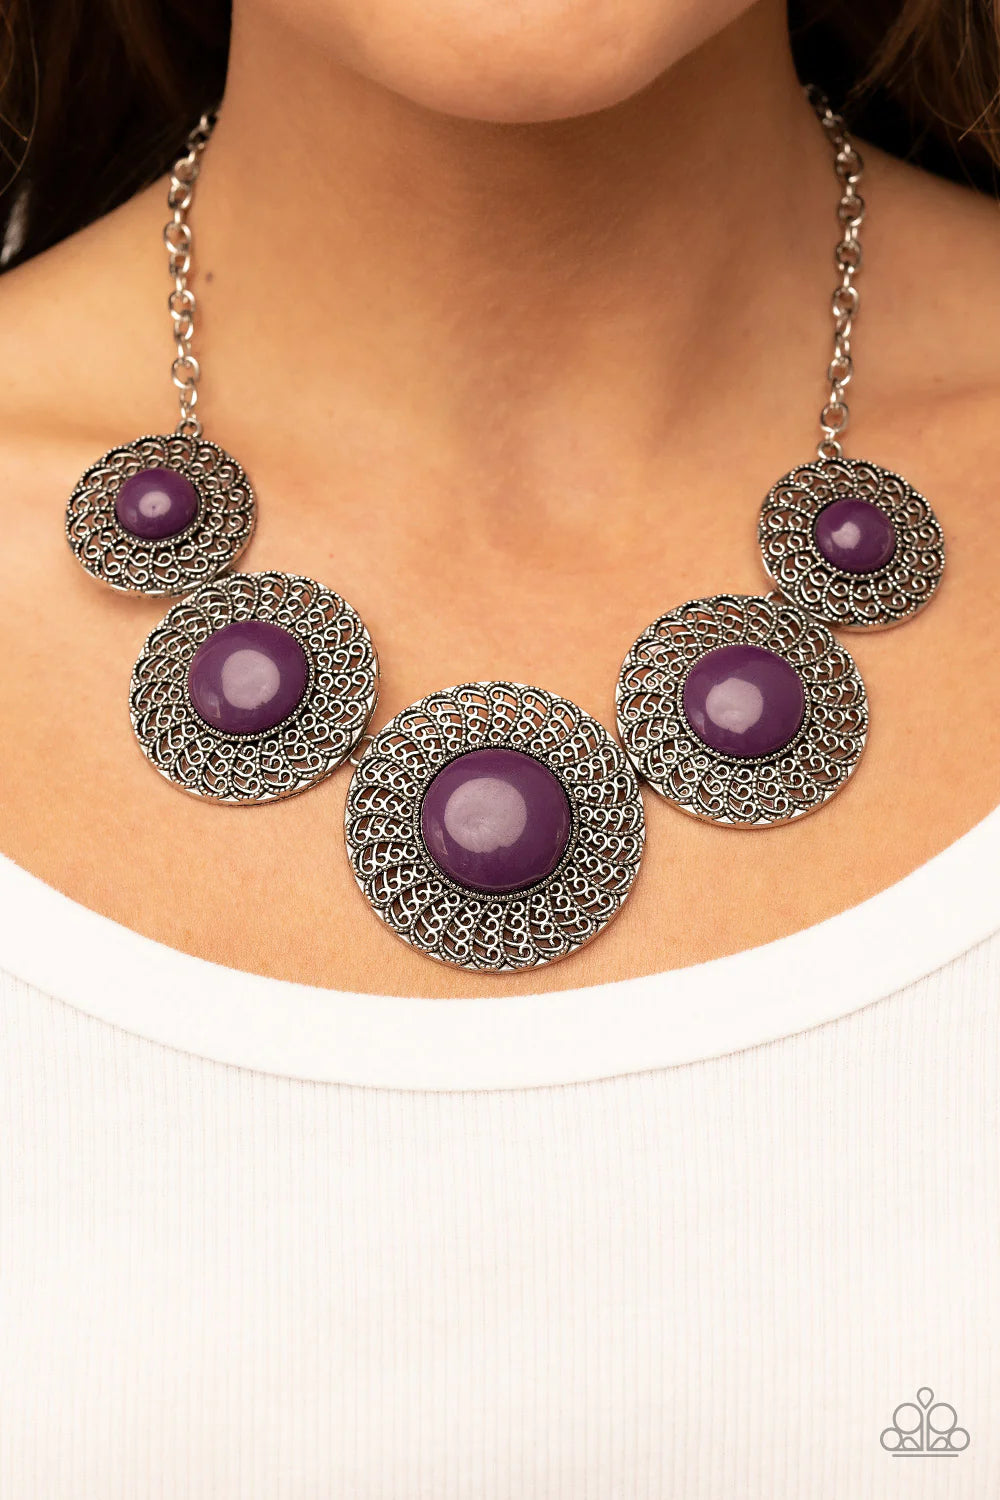 Paparazzi “Detail Oriented” Purple Necklace Earring Set - Cindysblingboutique